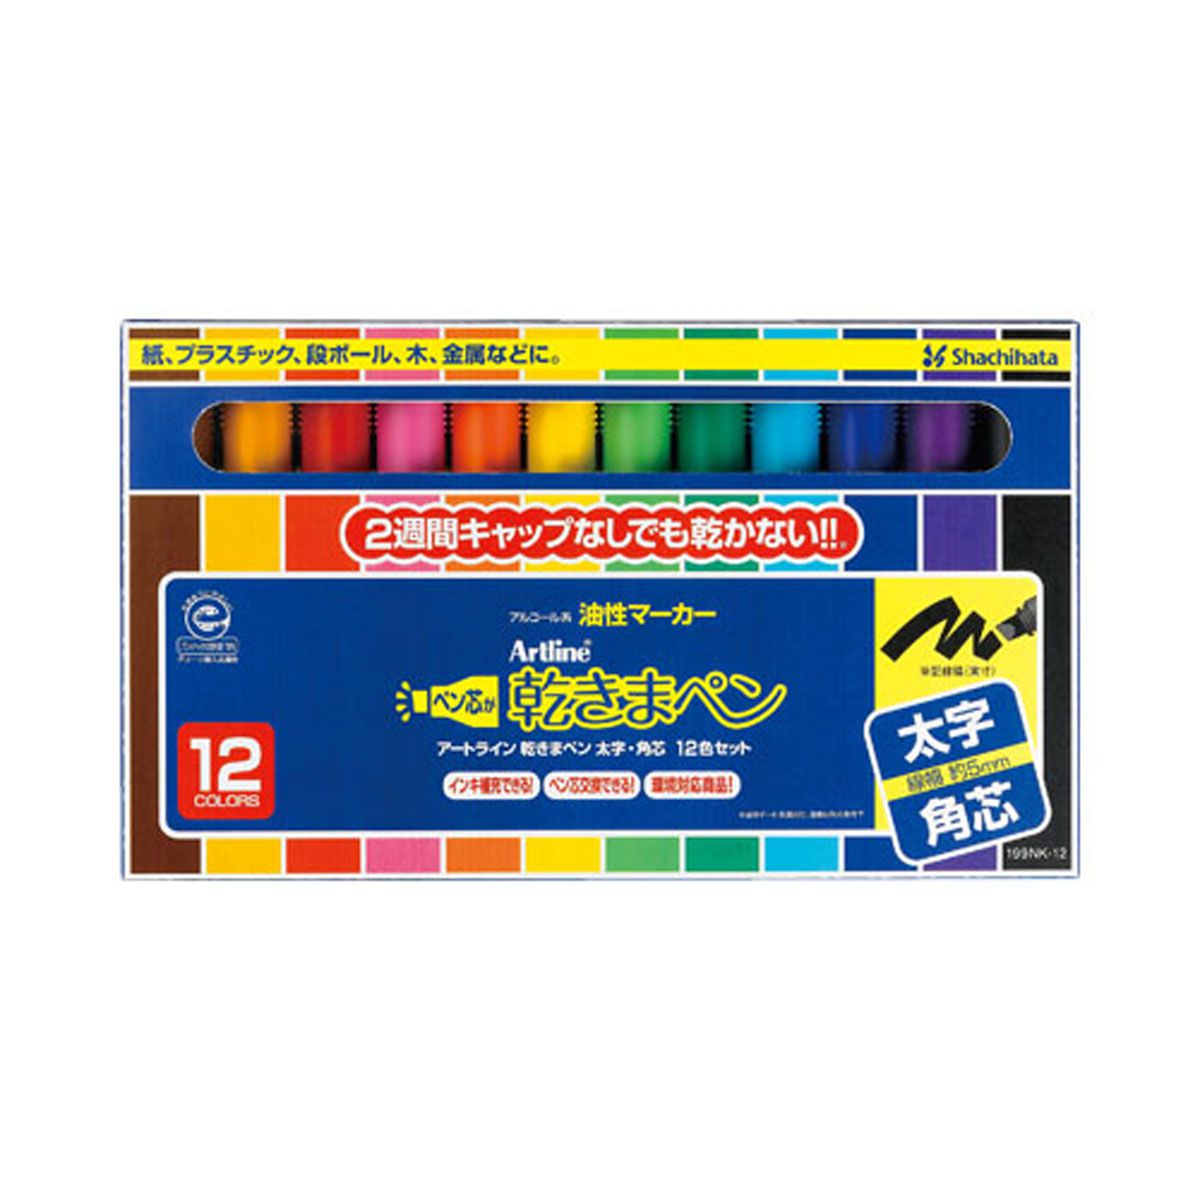 乾きまペン 油性マーカー 太字・角芯 12色セット 紙ケース_1